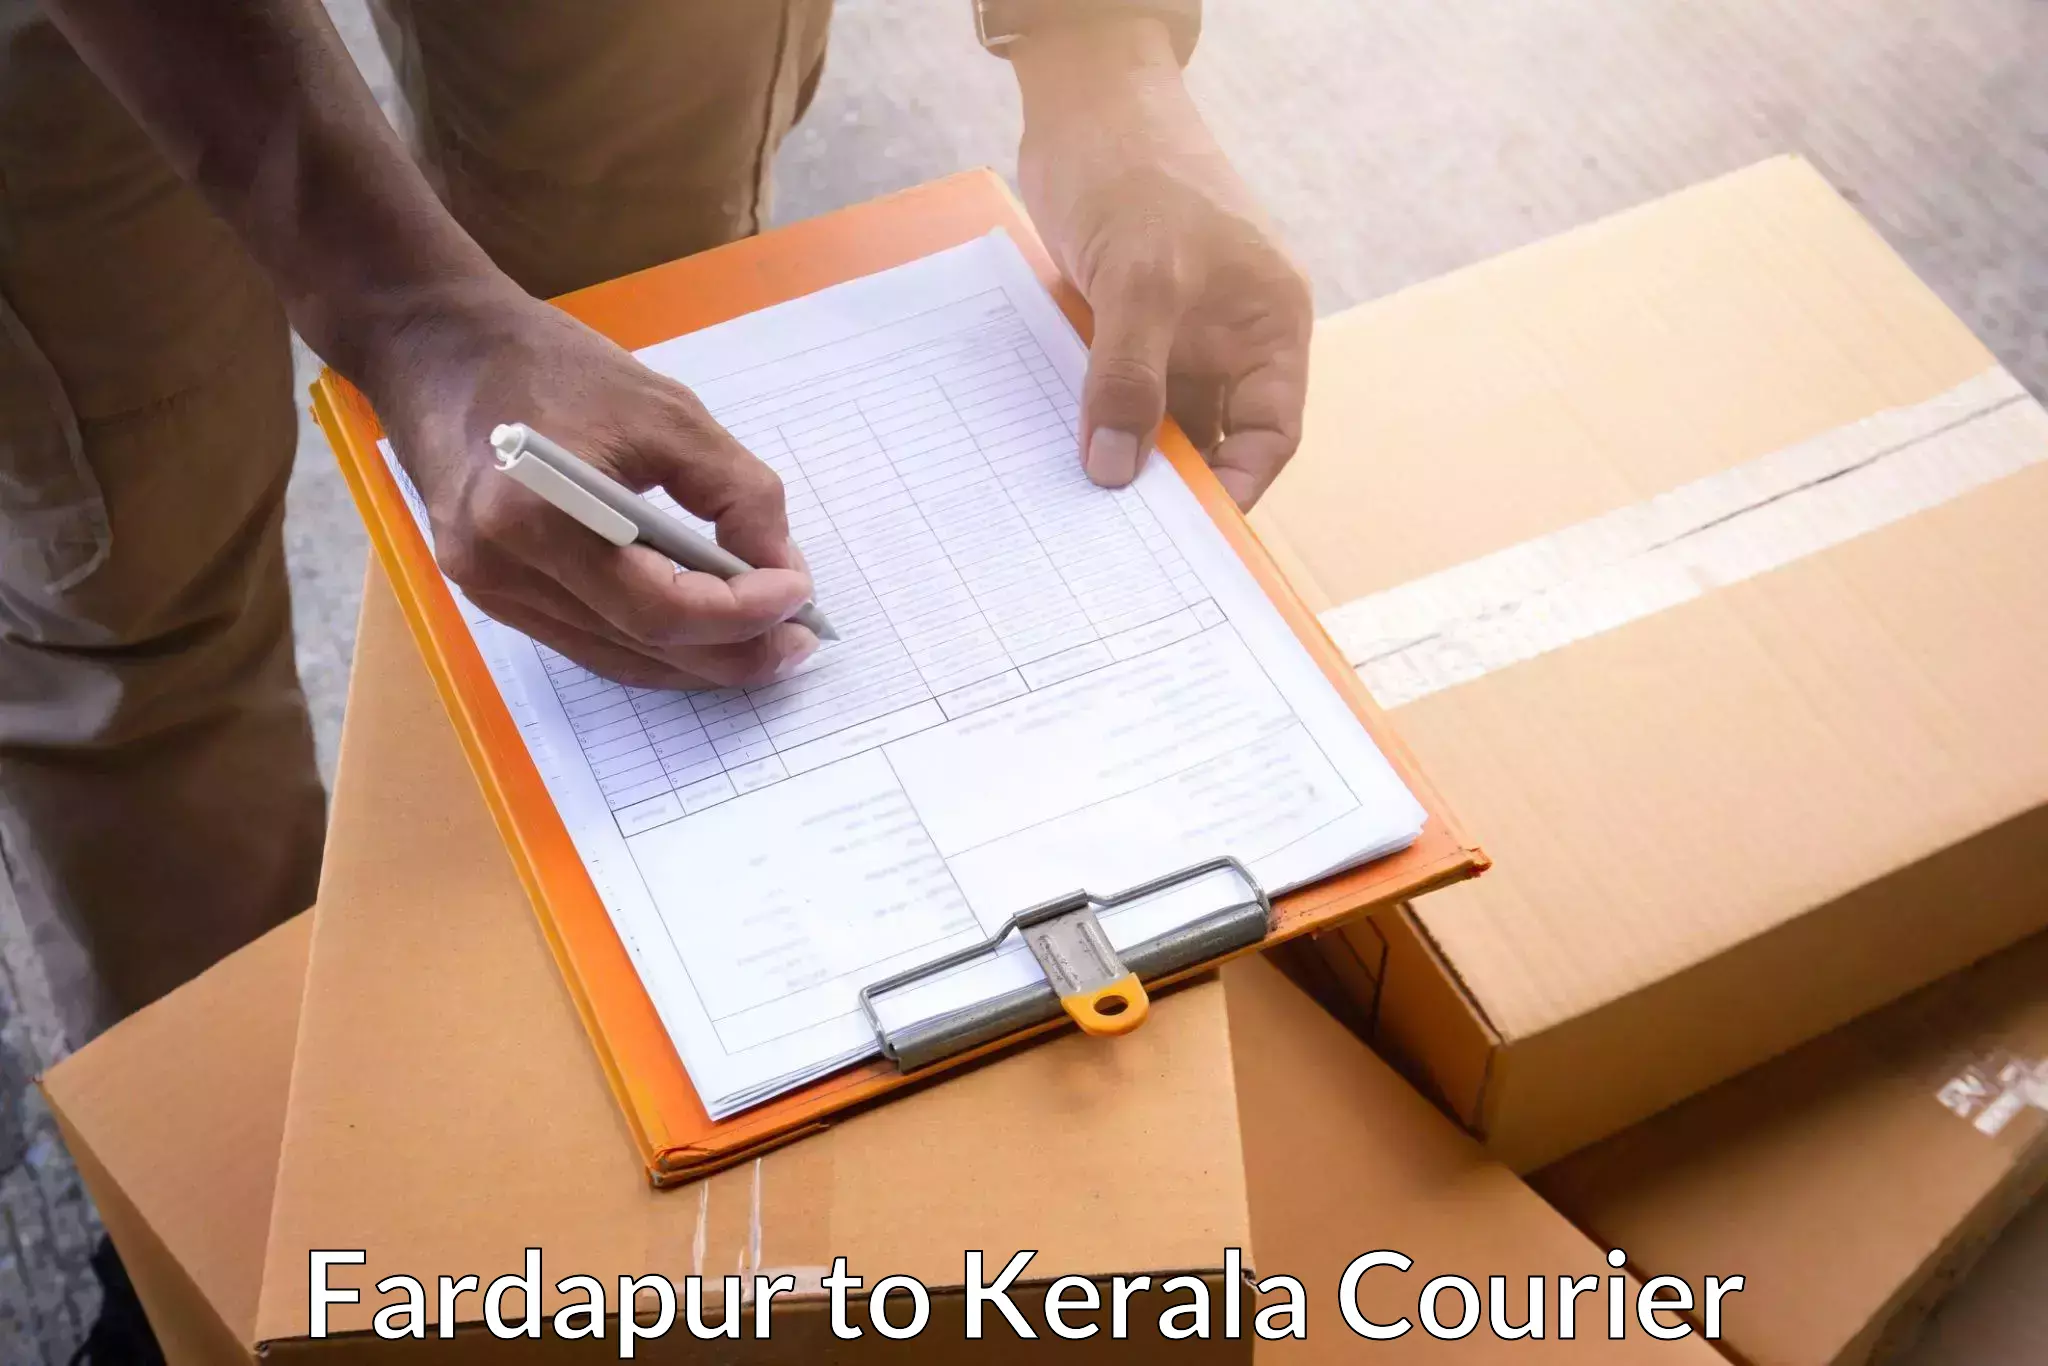 Speedy delivery service Fardapur to Cochin Port Kochi